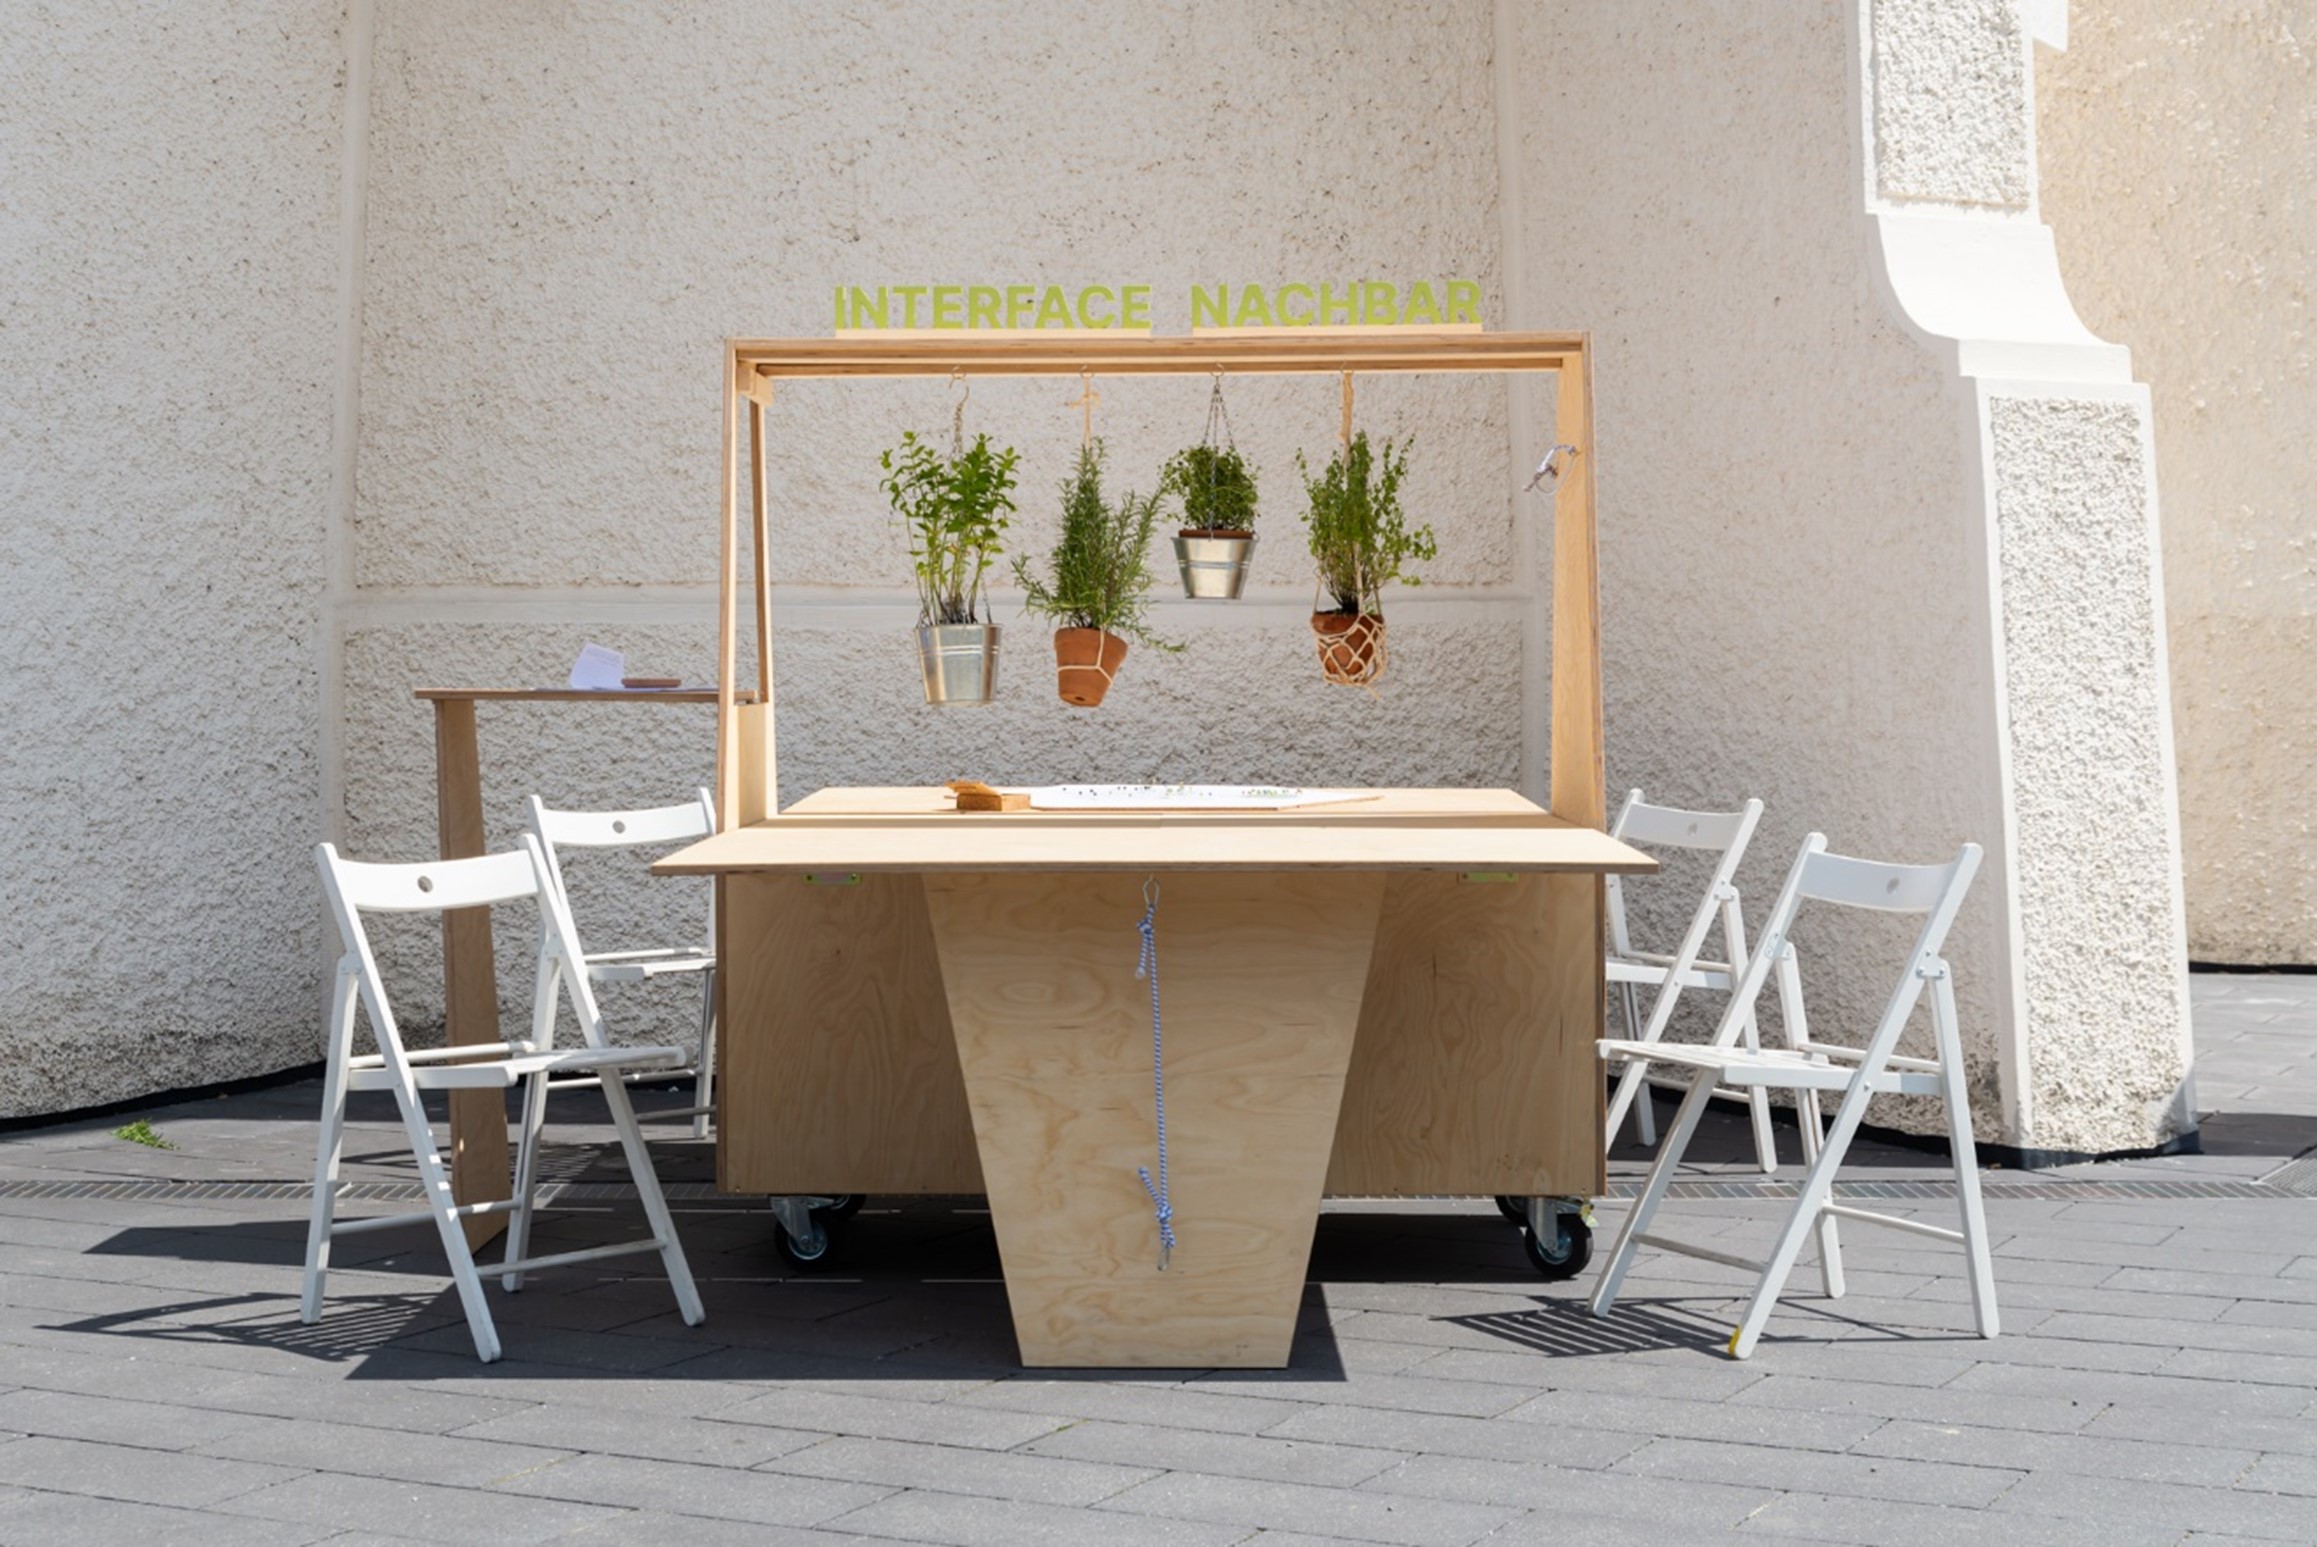 Ein Tischlein von InterfaceNachbar, um das herum Stühle stehen.